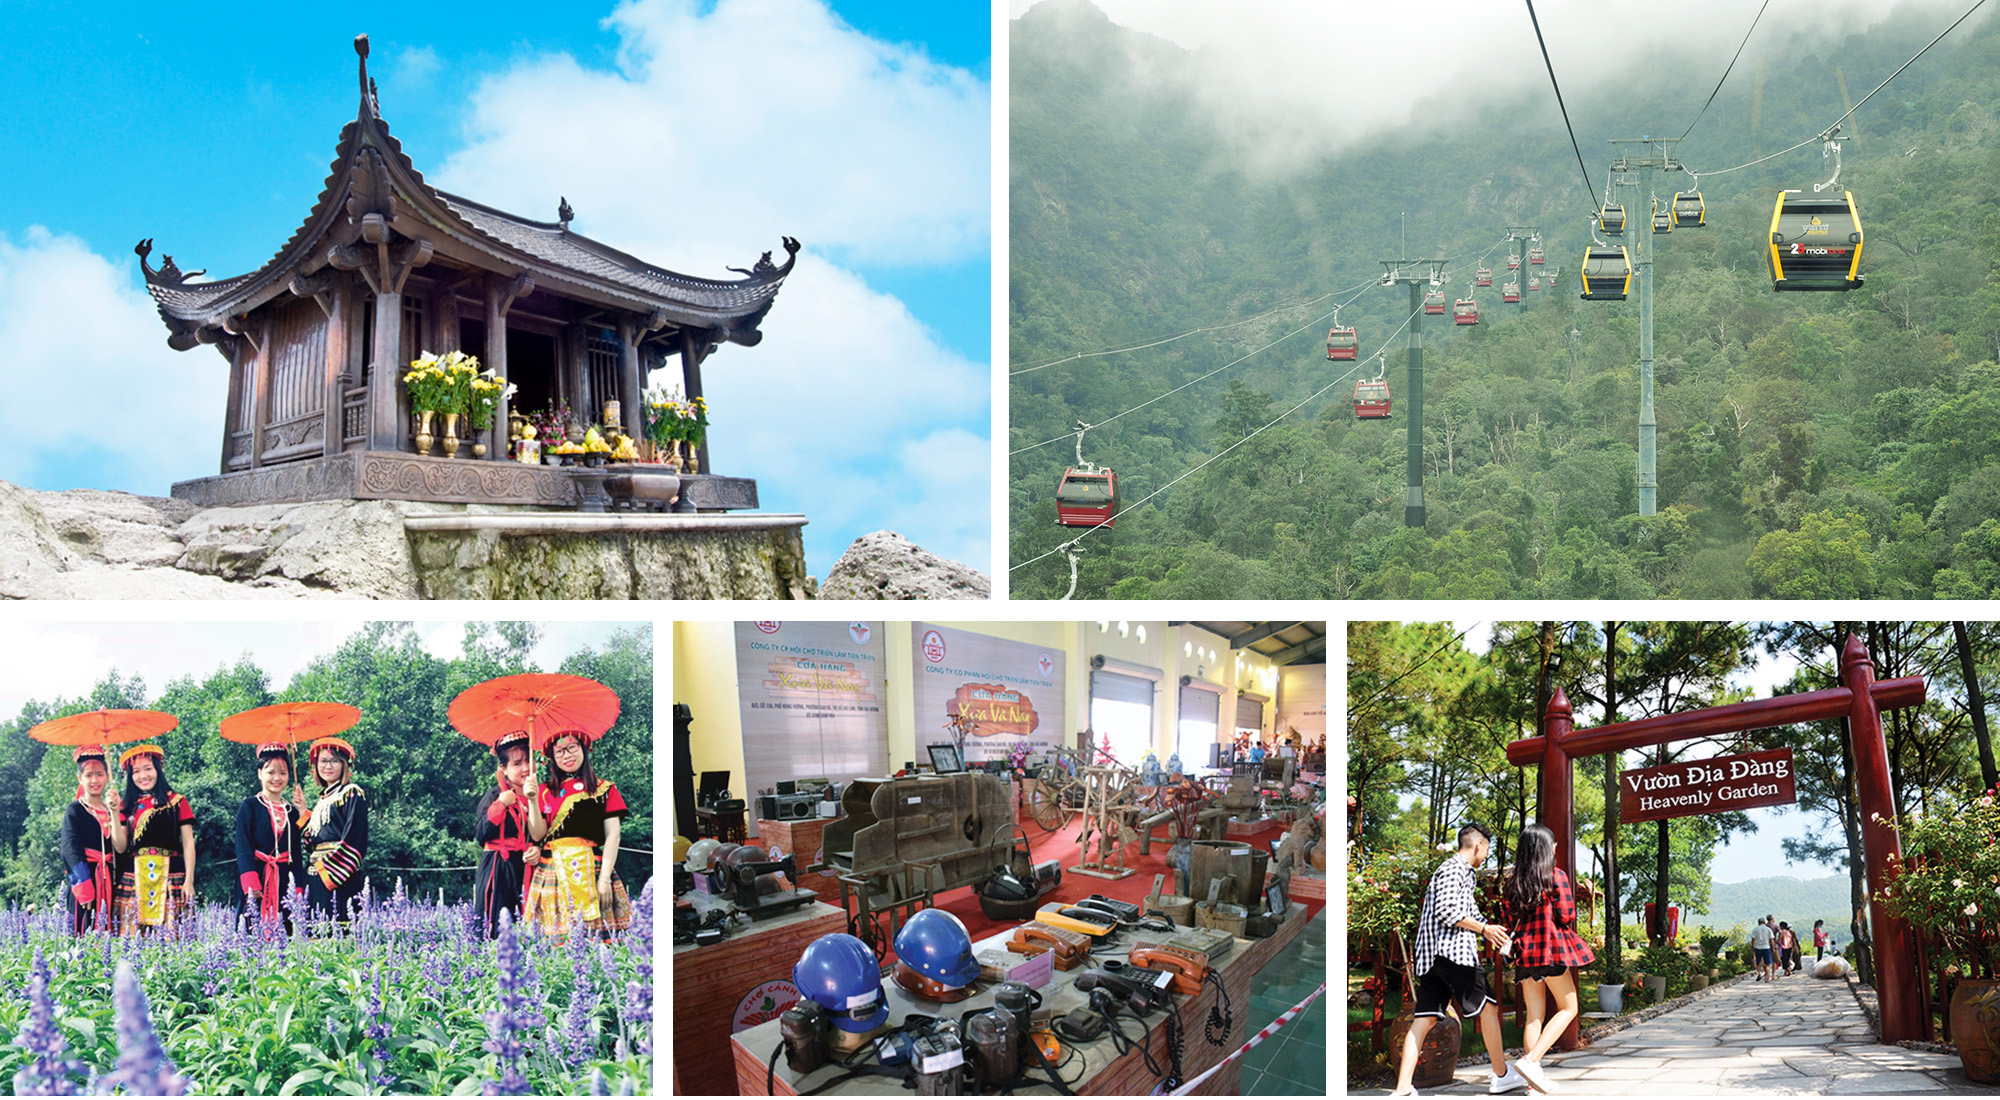 Đến Uông Bí, ngoài non thiêng Yên Tử, du khách có thể ghé thăm Thung lũng hoa Yên Tử, chợ cảnh Uông Bí hay Khu du lịch sinh thái Hồ Yên Trung - những điểm đến mới đầy hấp dẫn.